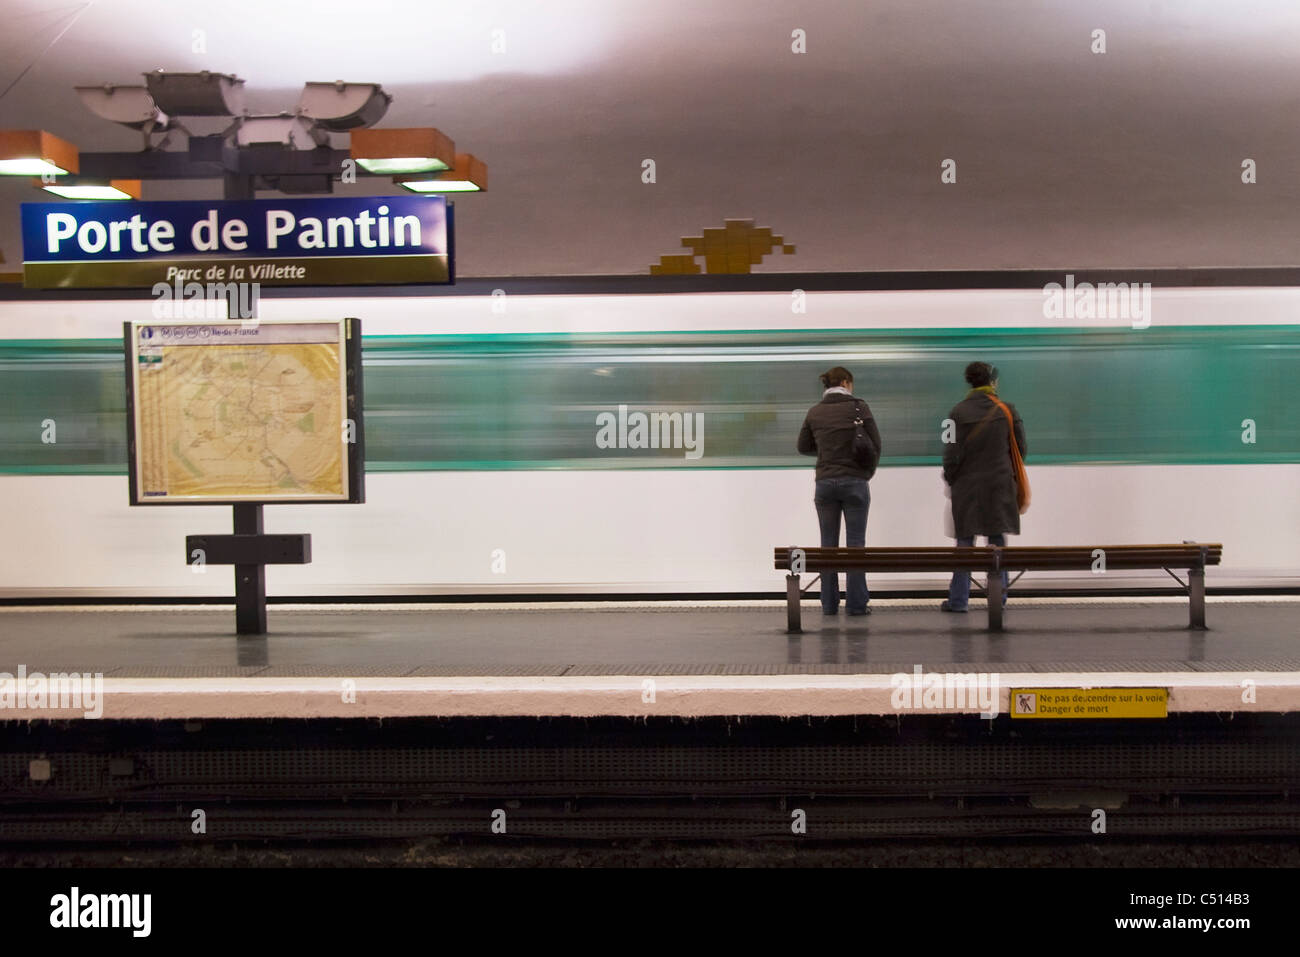 Les personnes en attente de train sur plateform à Porte de Pantin, Paris Banque D'Images